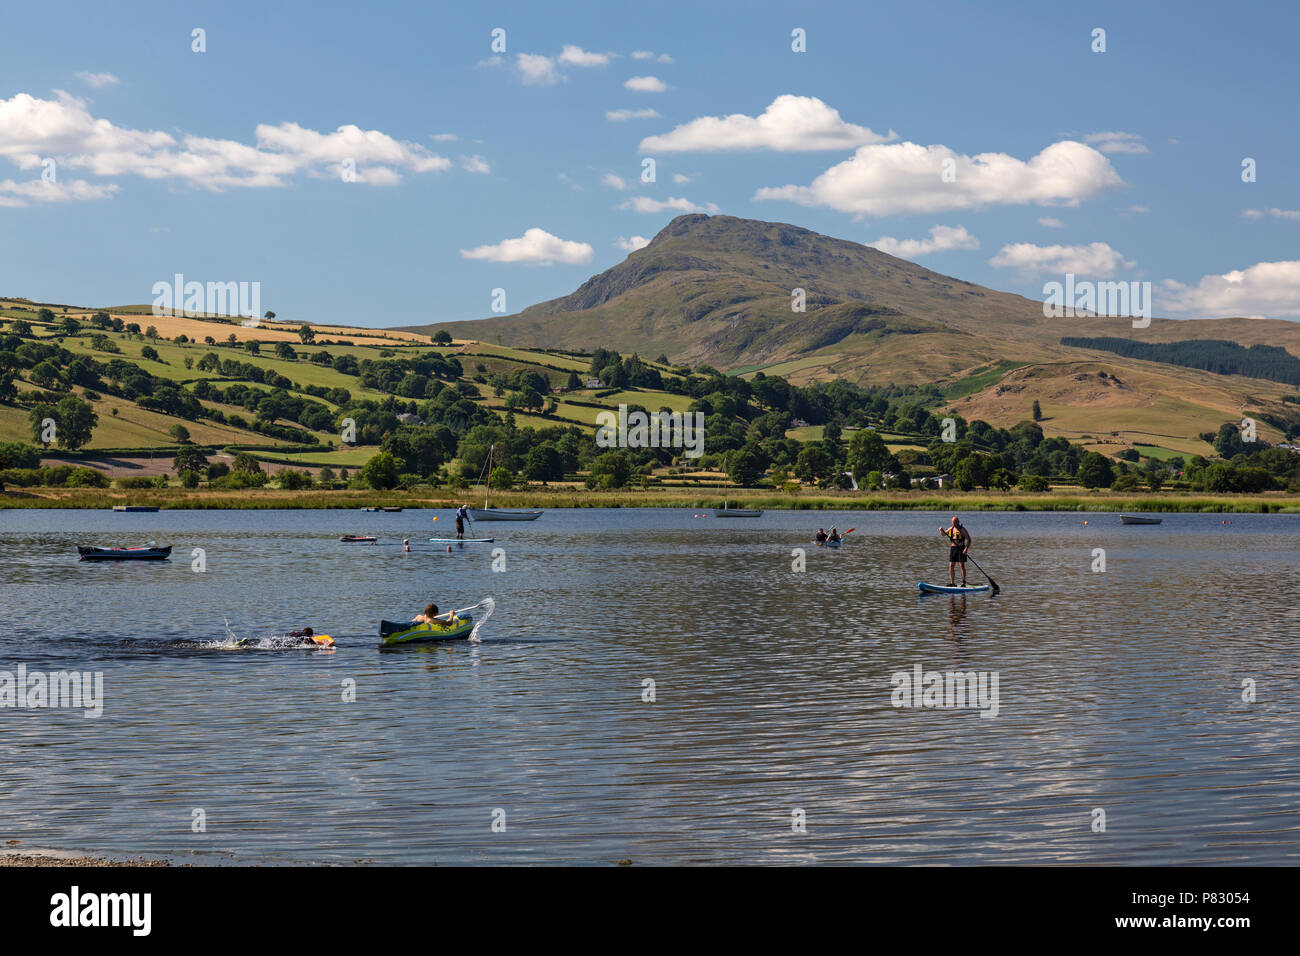 Les personnes prenant part à divers sports nautiques sur le lac Llyn Tegid, Bala ou dans Gwynedd, Pays de Galles, Royaume-Uni. Banque D'Images